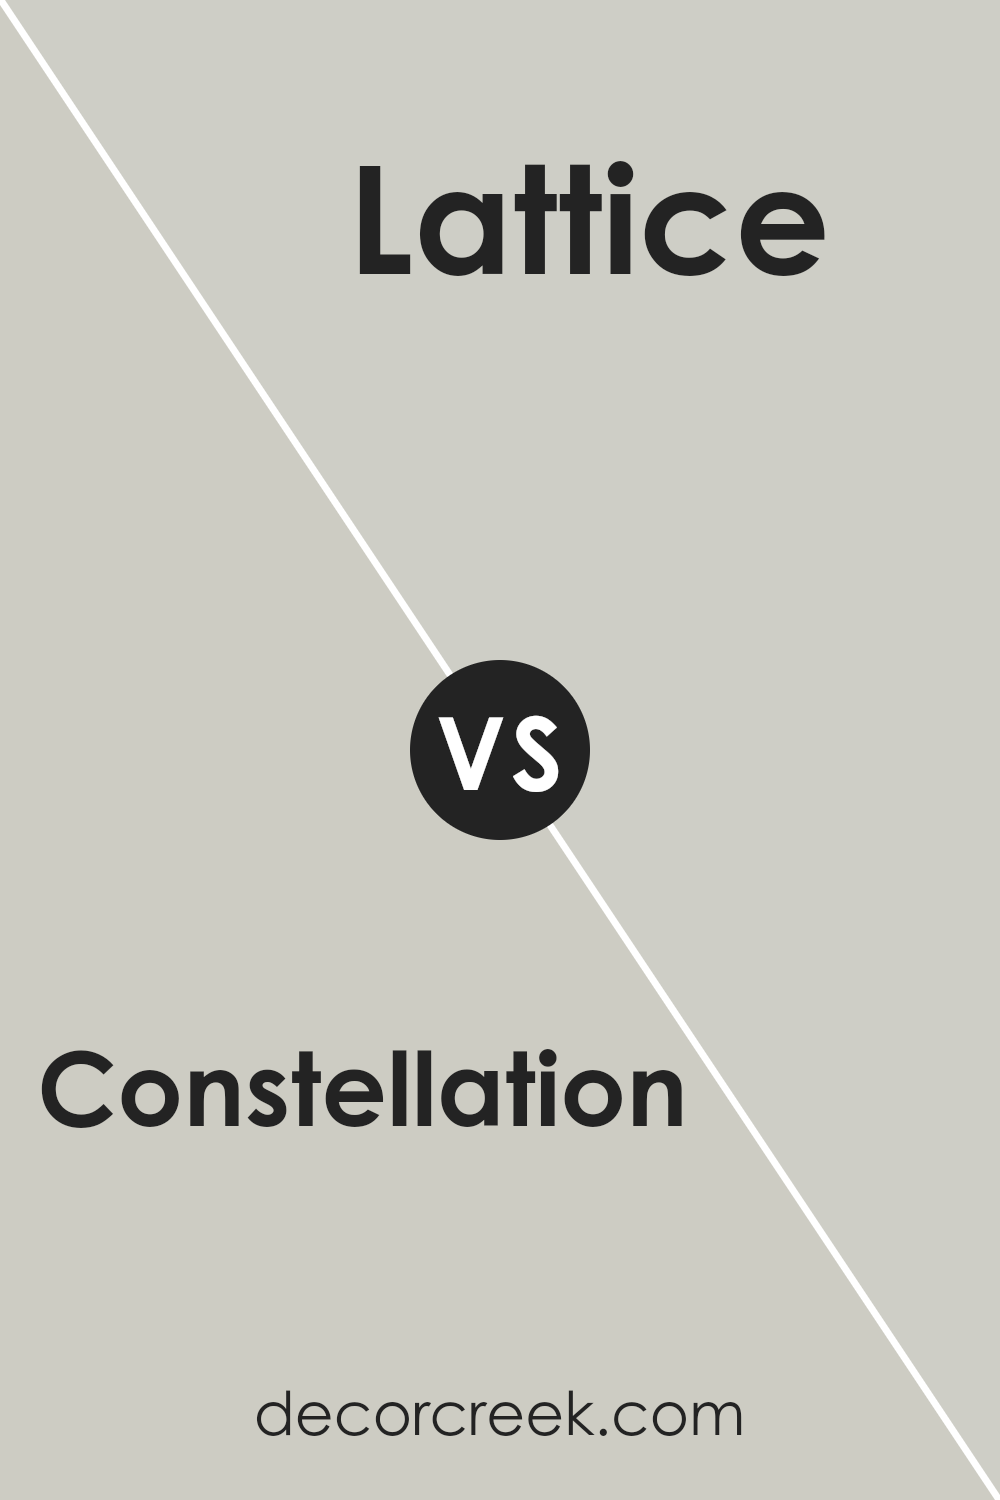 constellation_sw_9629_vs_lattice_sw_7654